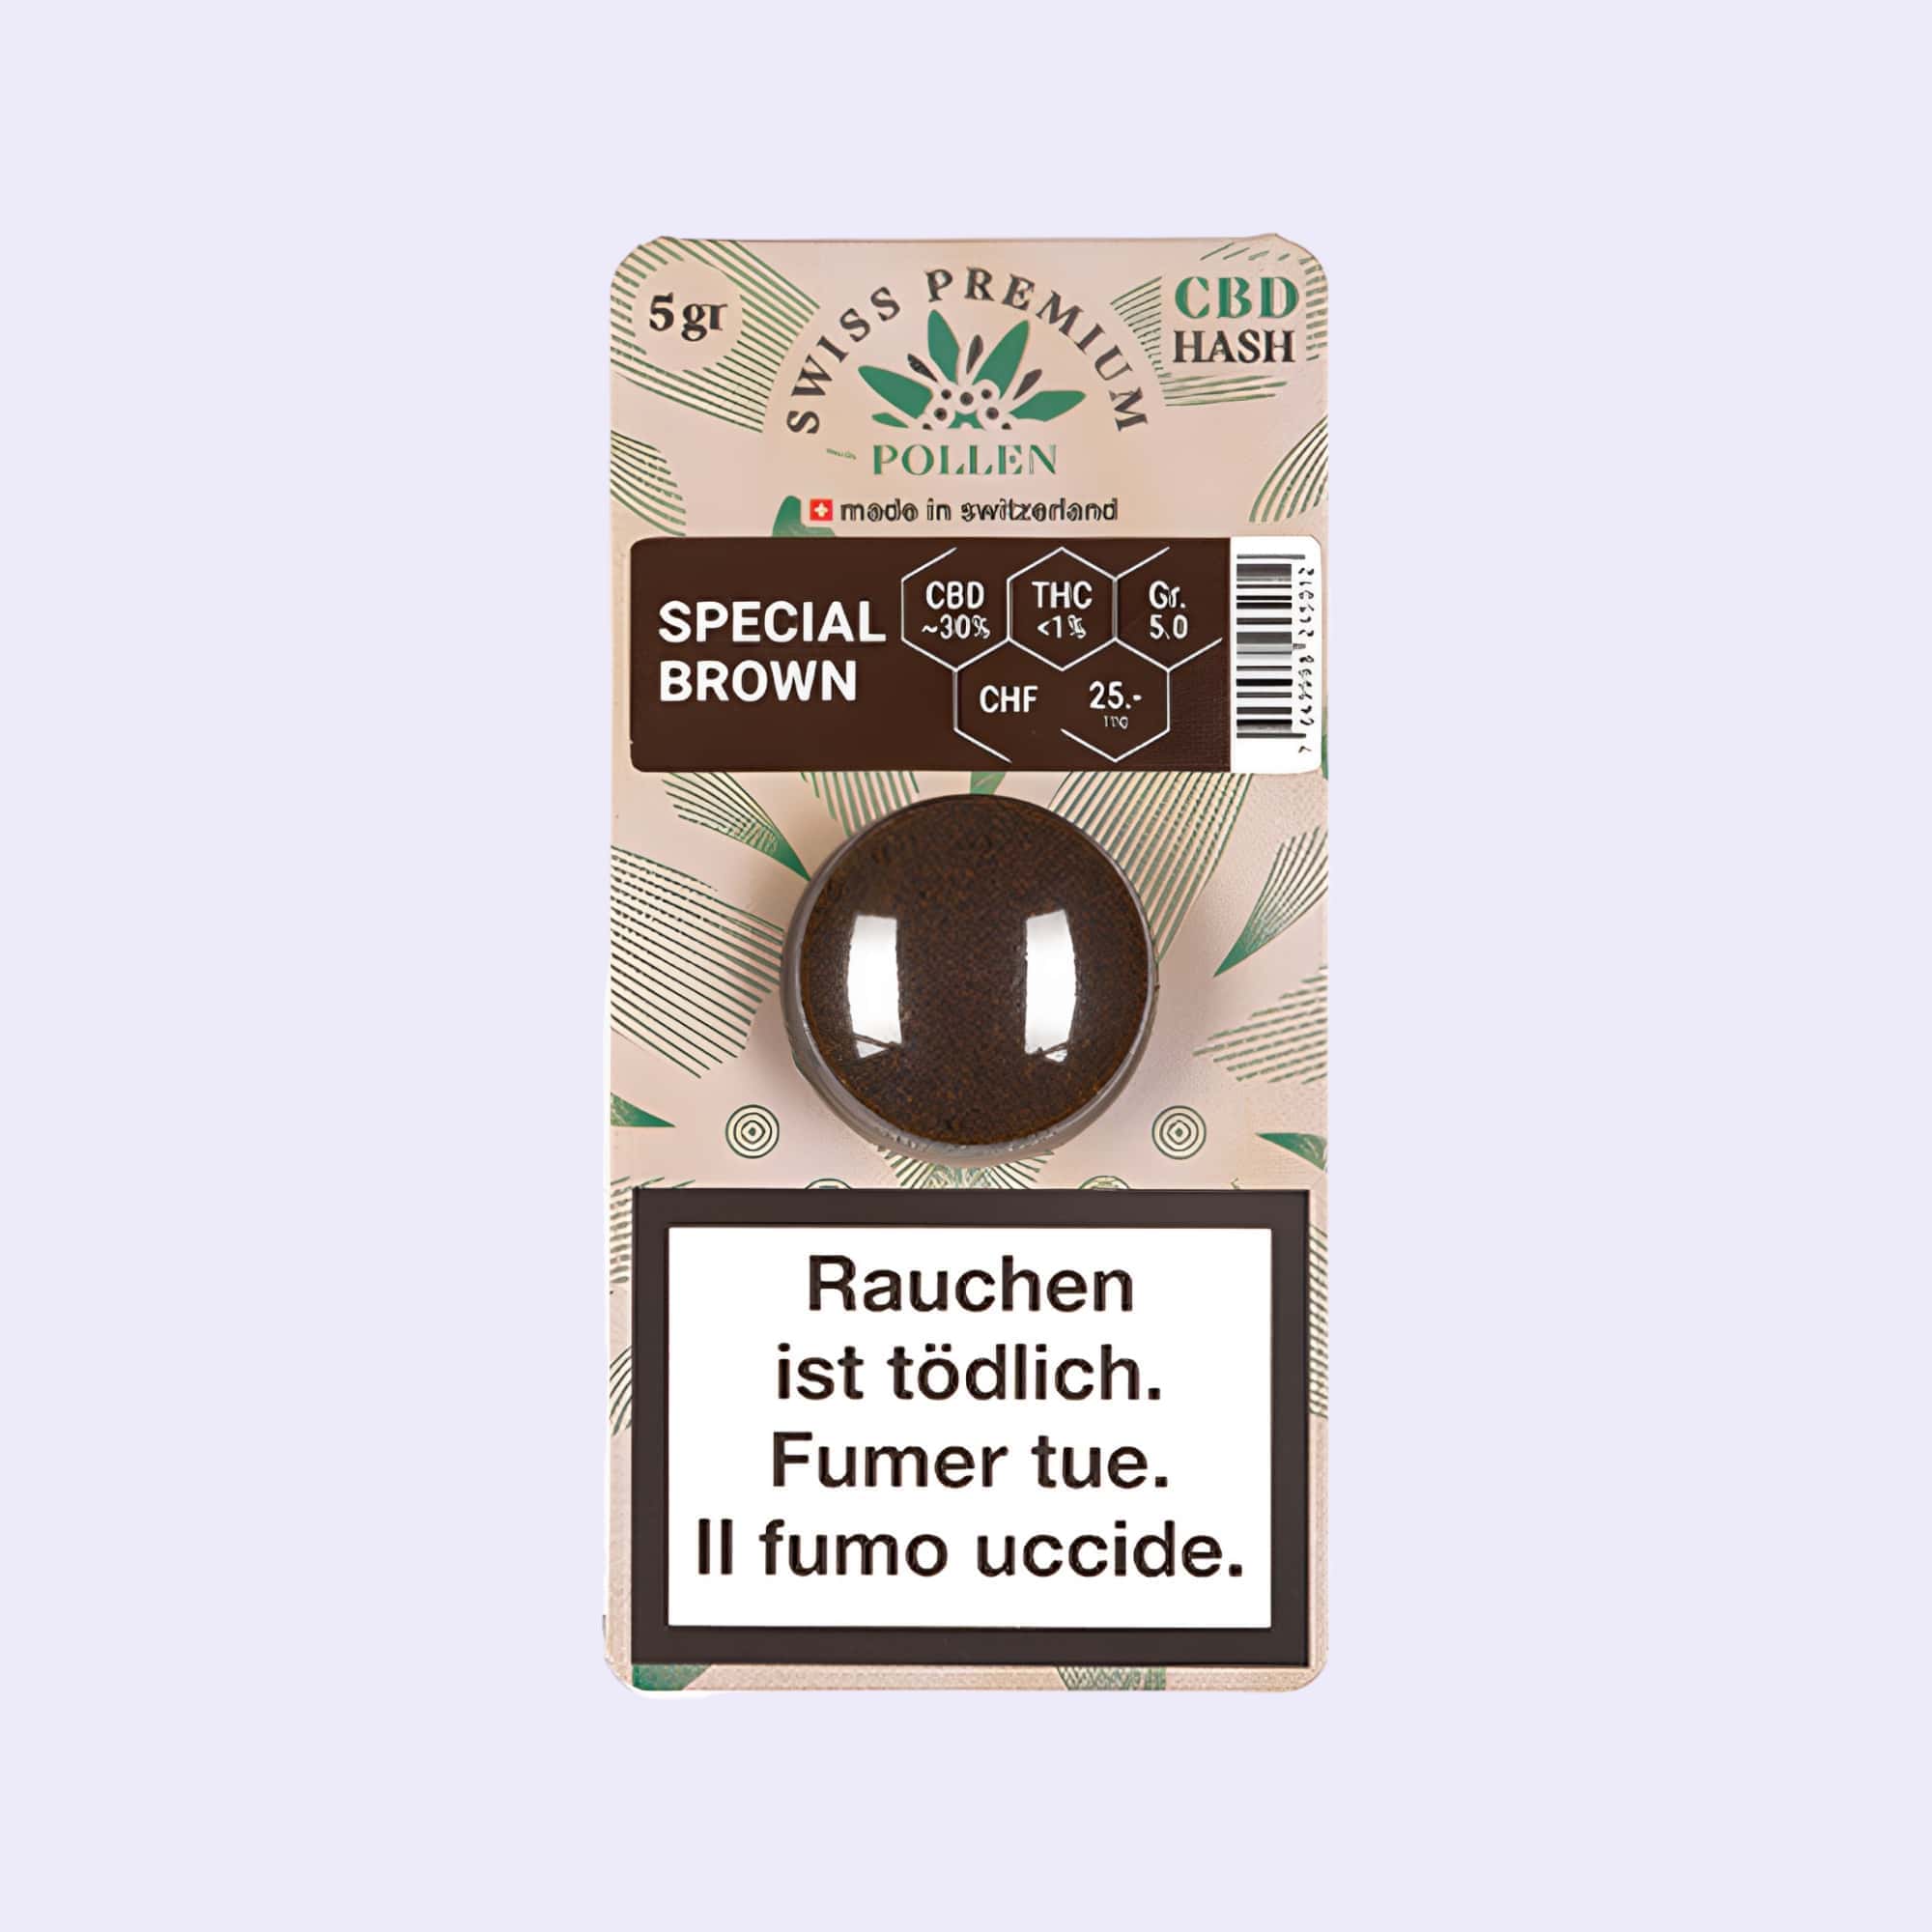 Dieses Bild zeigt das Haschisch Special Brown von der Firma Swiss Premium Pollen